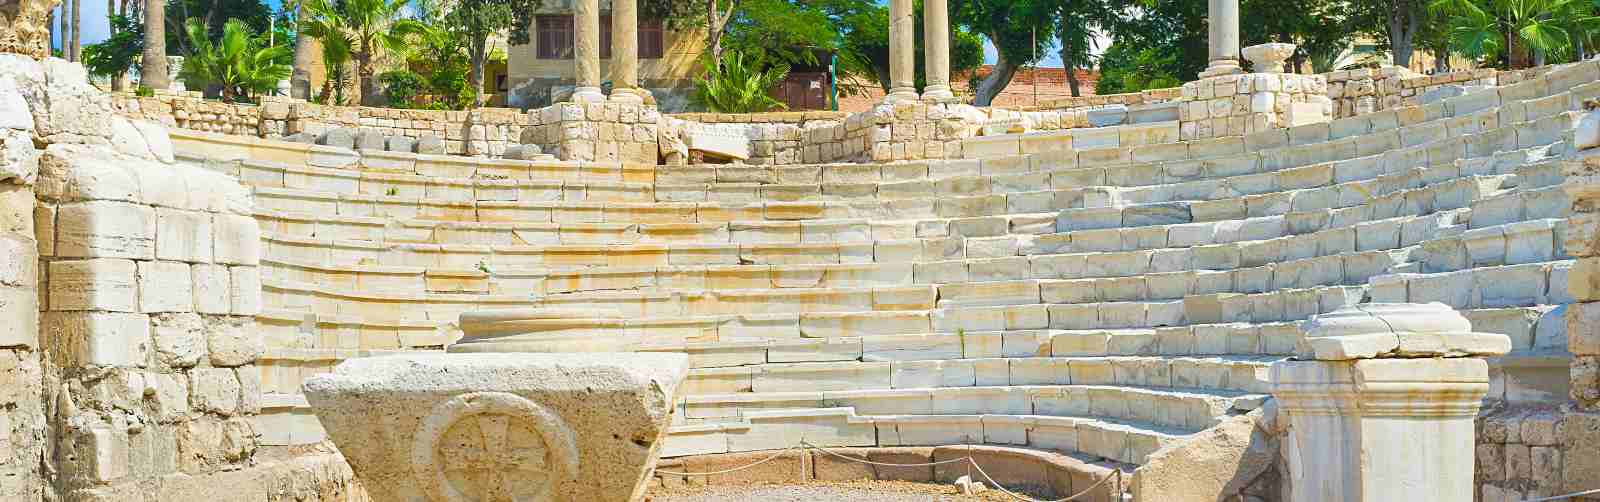 The Roman amphitheatre of Alexandria